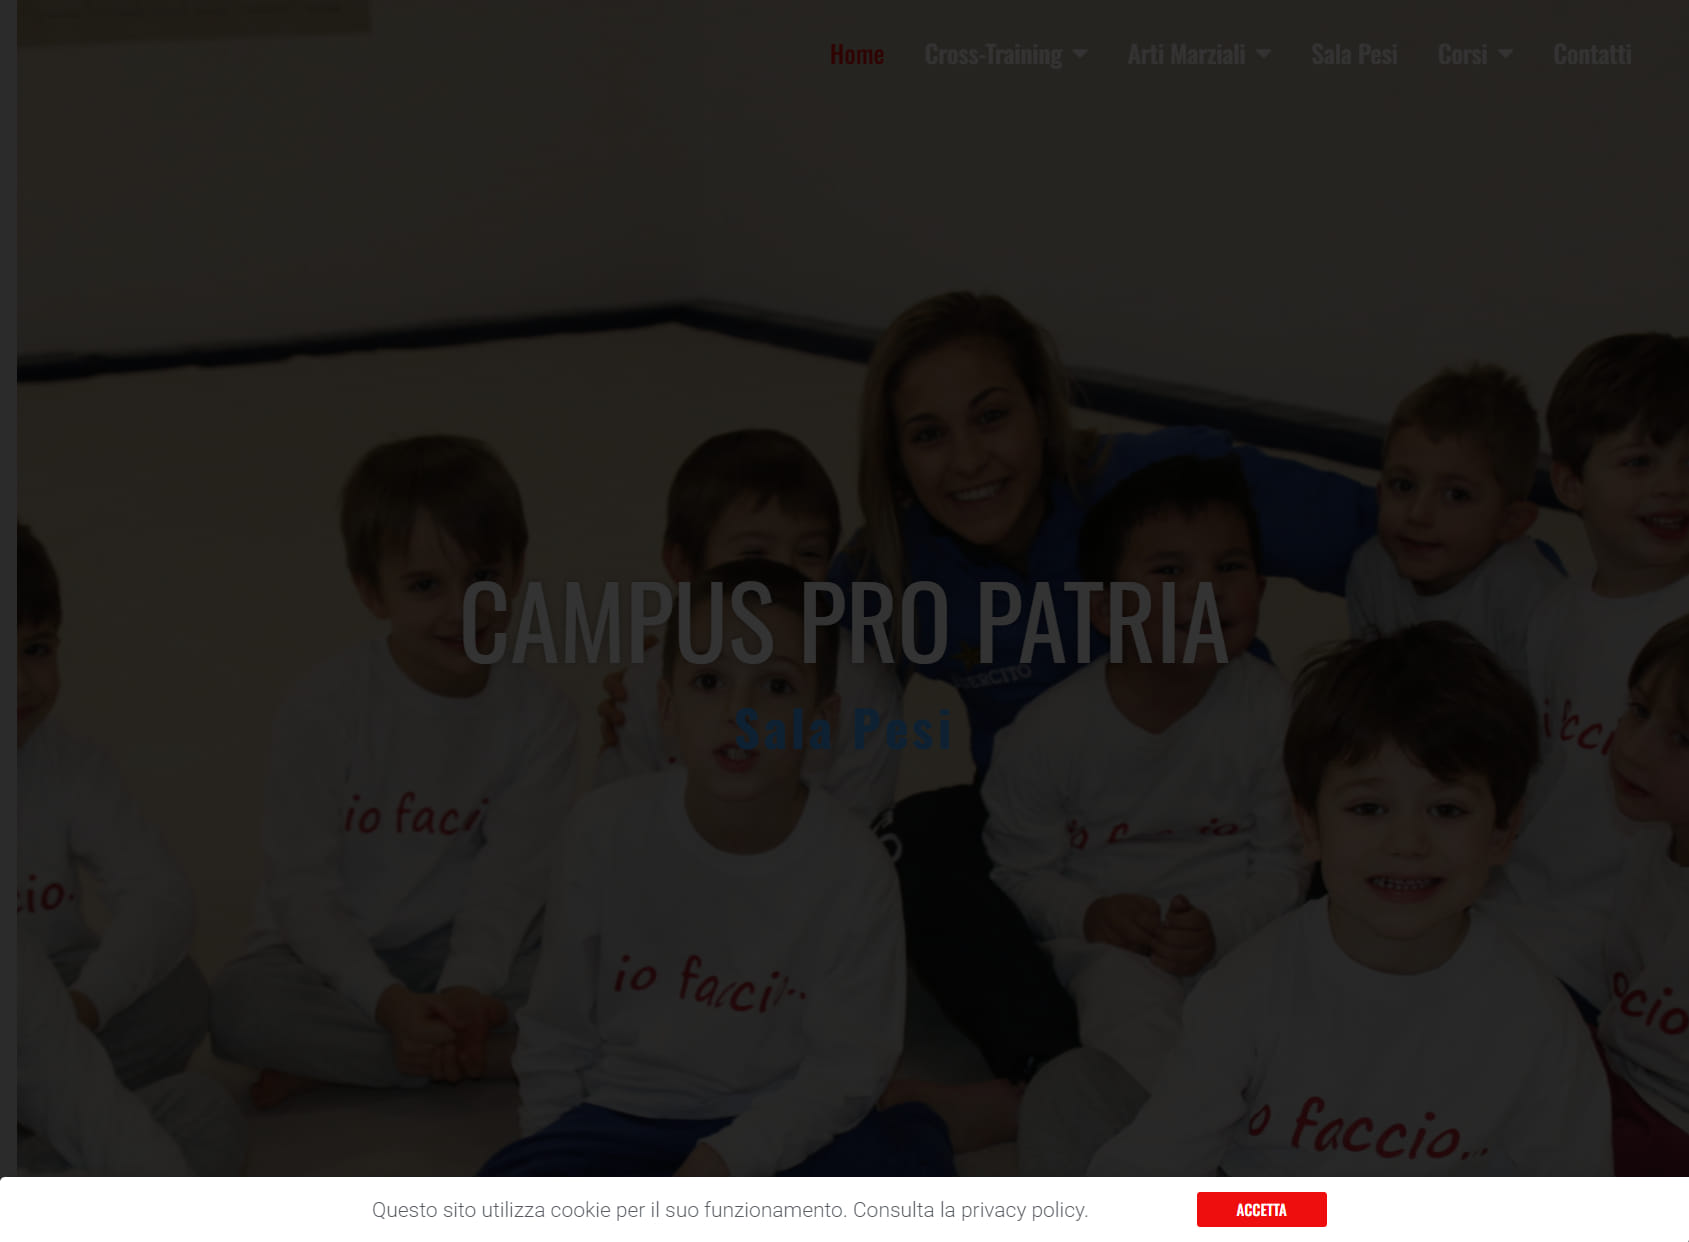 Campus - Pro Patria Judo